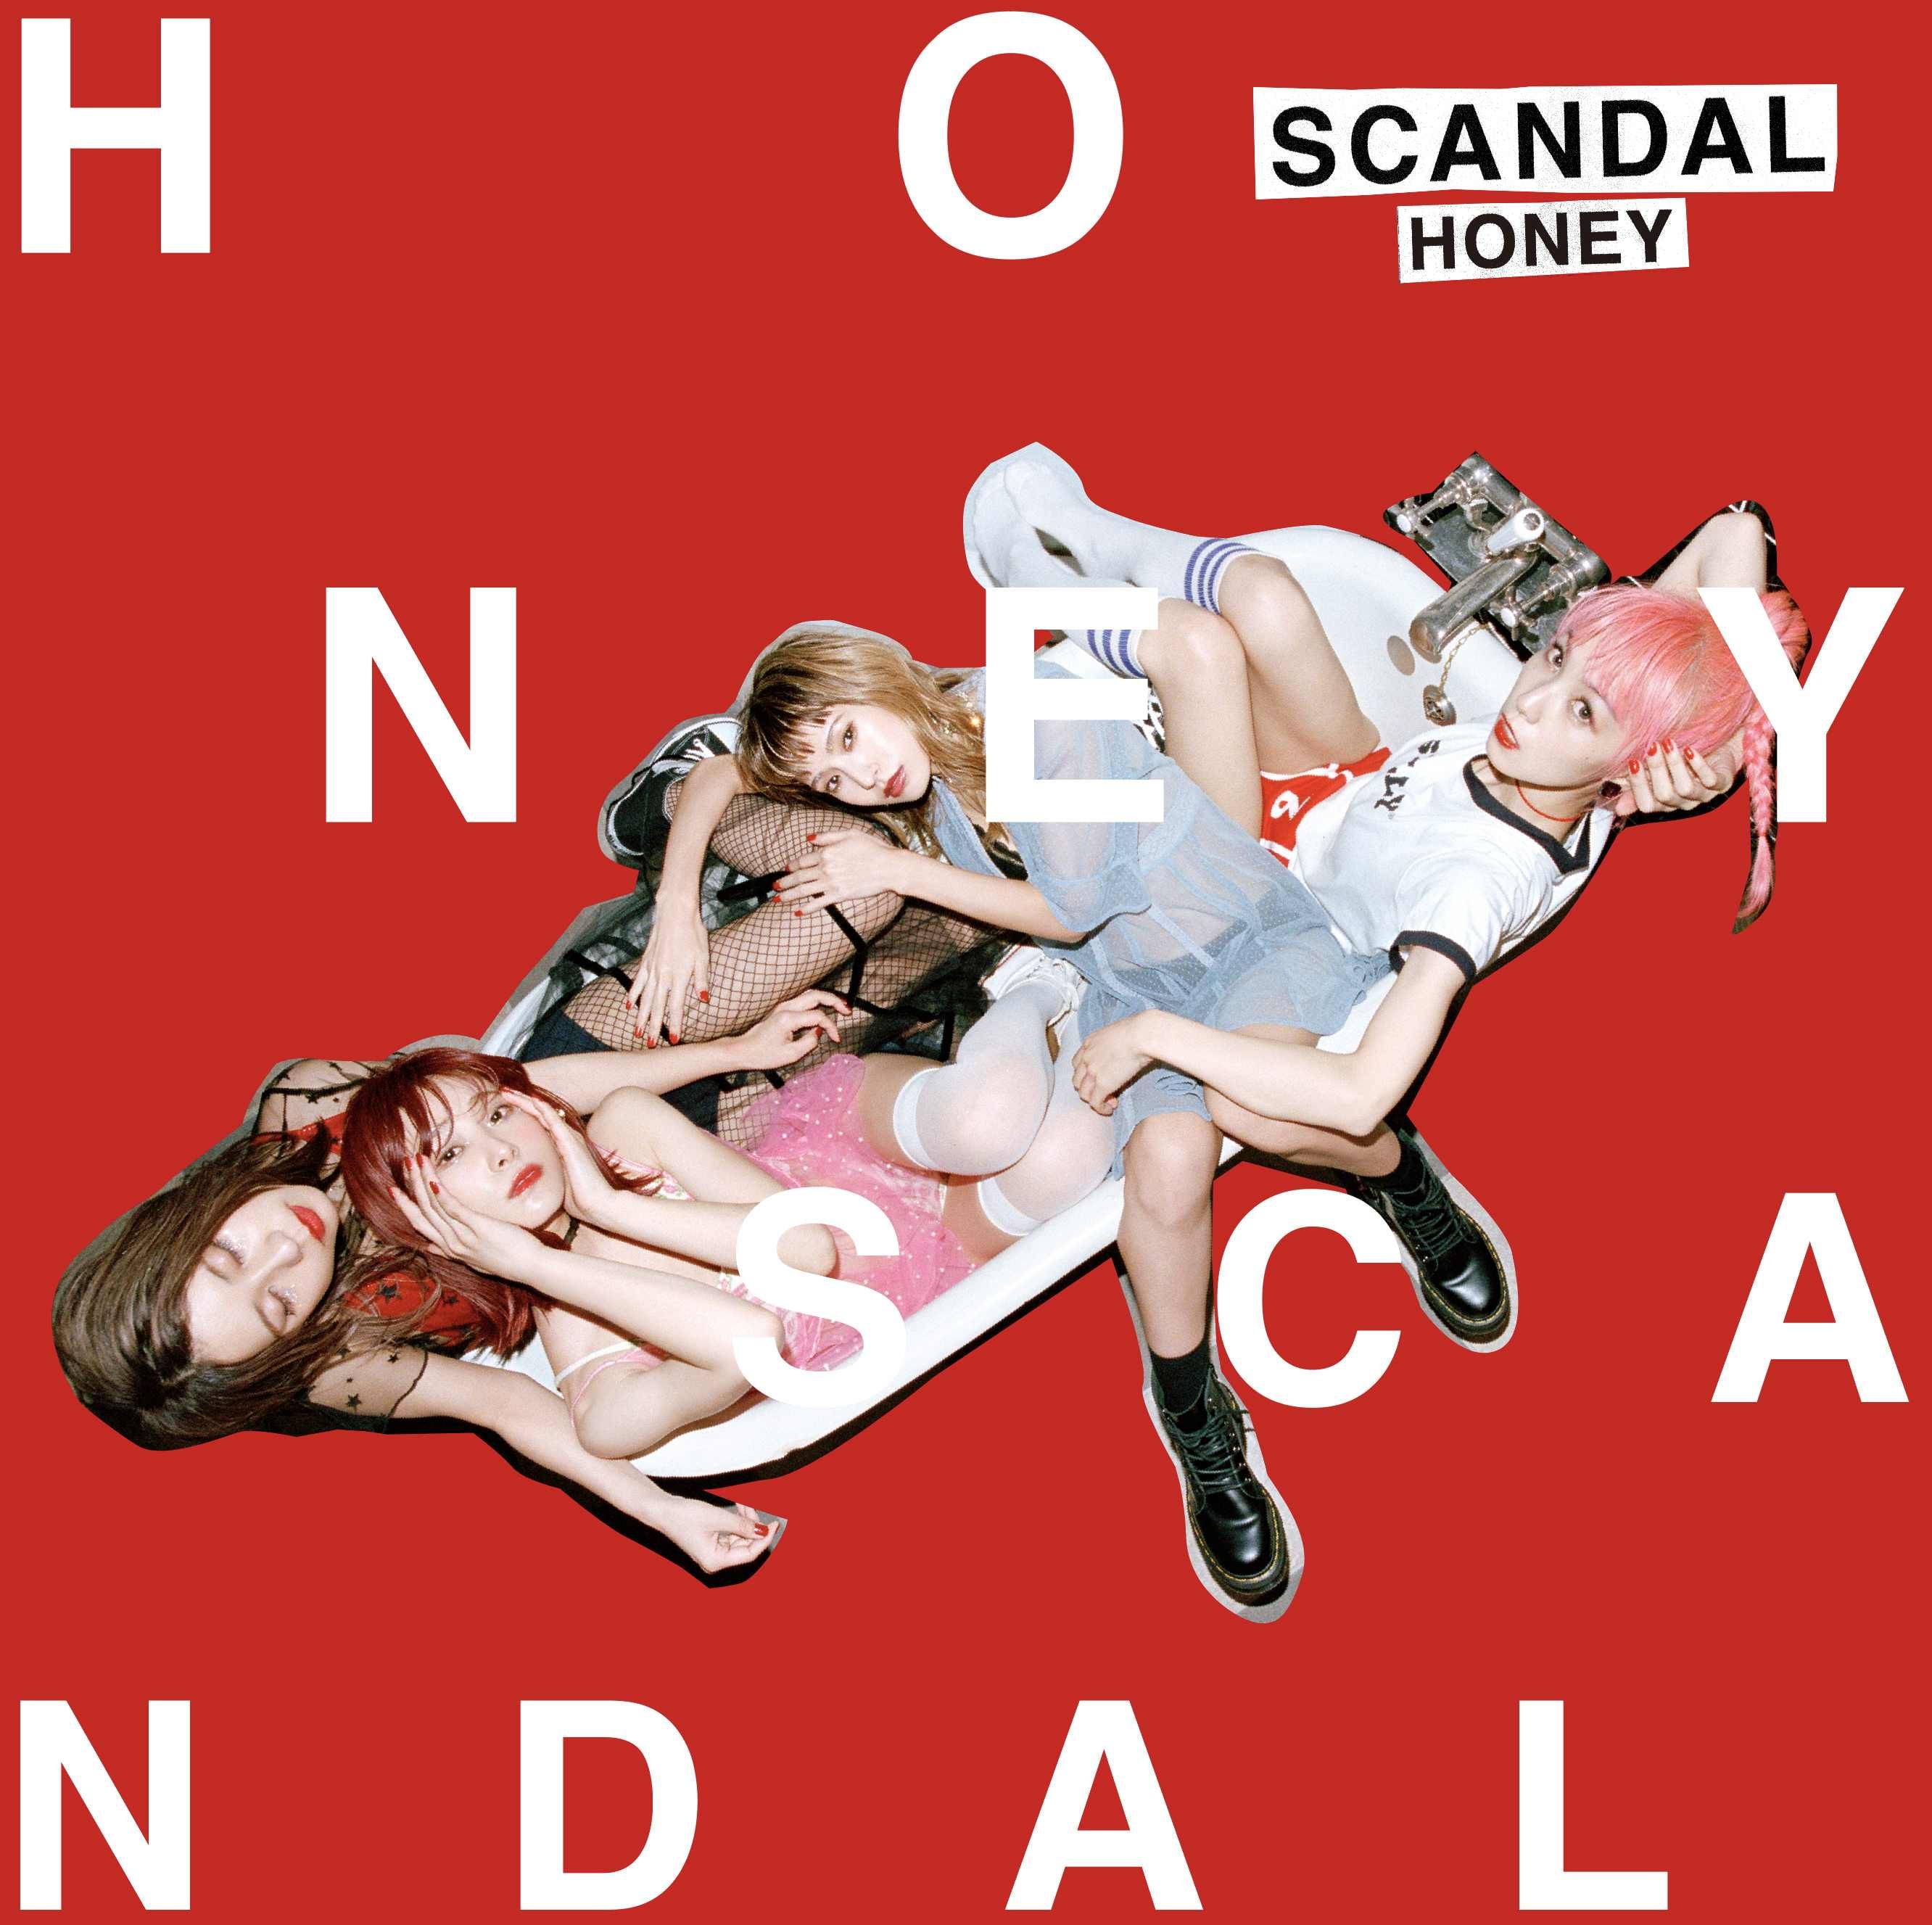 scandal_honey - HONEY 5ccba75f68db2c836756465284bf075f